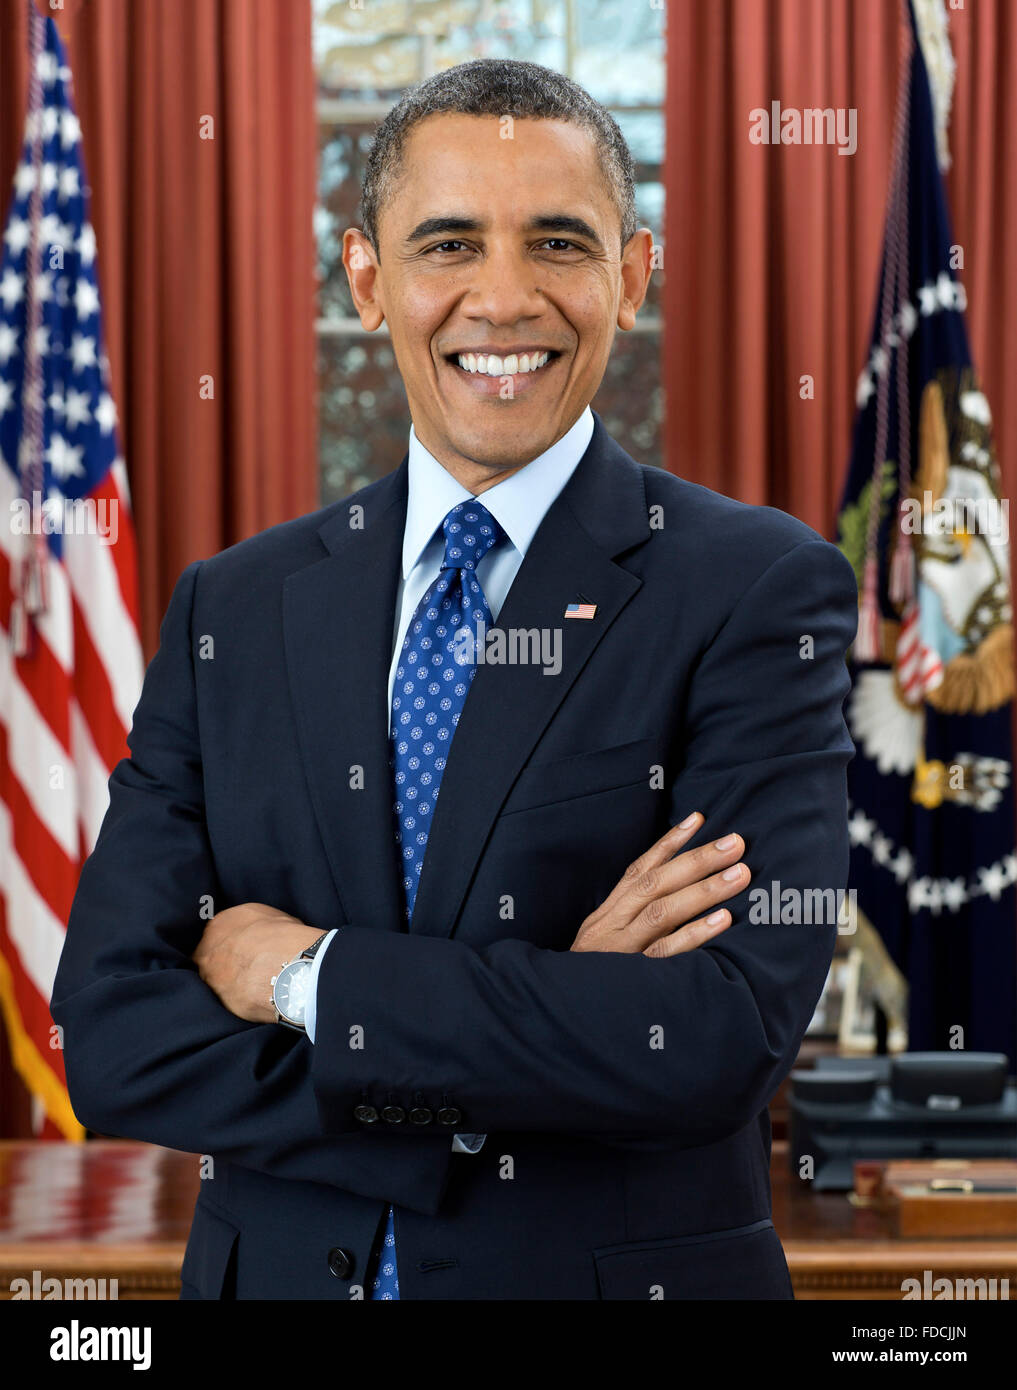 Barack Obam, Retrato. Retrato oficial de la Casa Blanca de Barack Obama, el presidente de los Estados Unidos de 44th, diciembre de 2012 Foto de stock